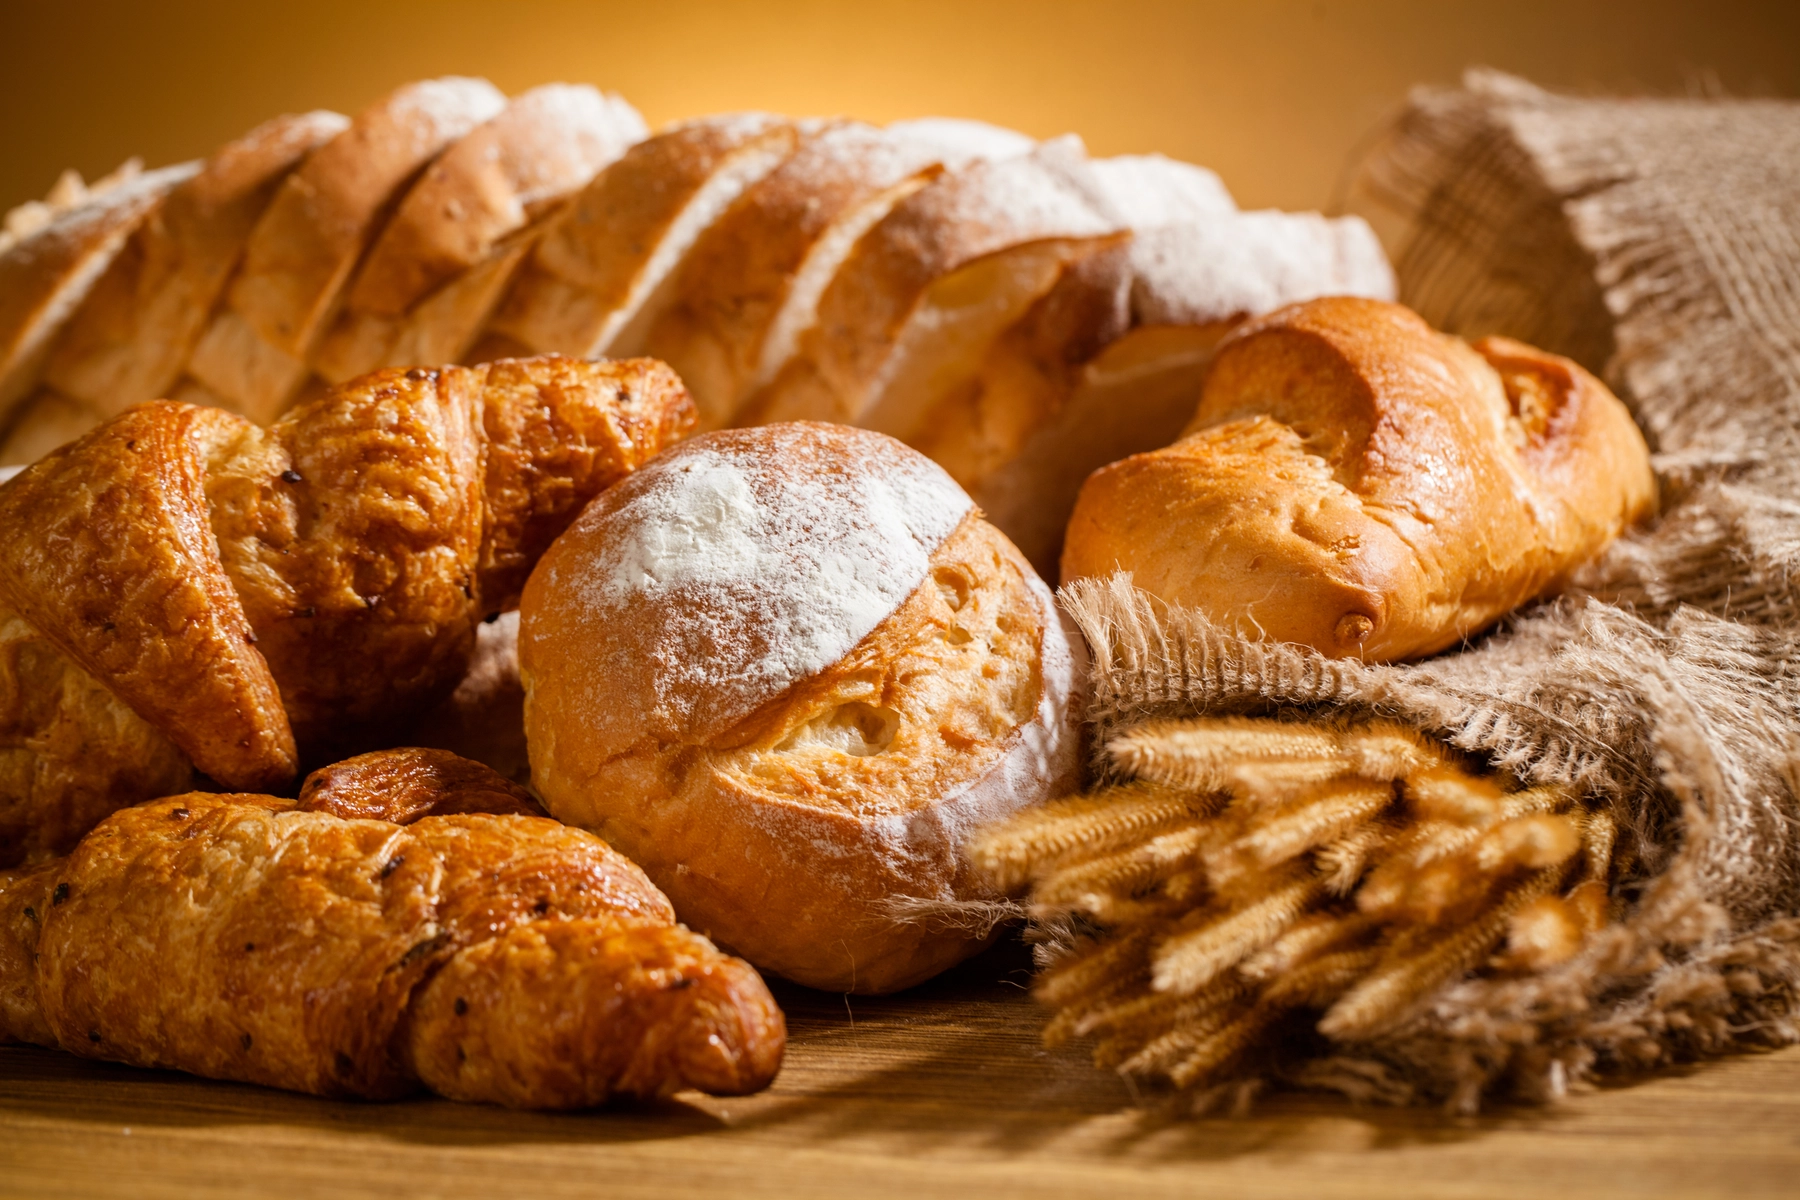 أنواع الخبز للريجيم والحميات